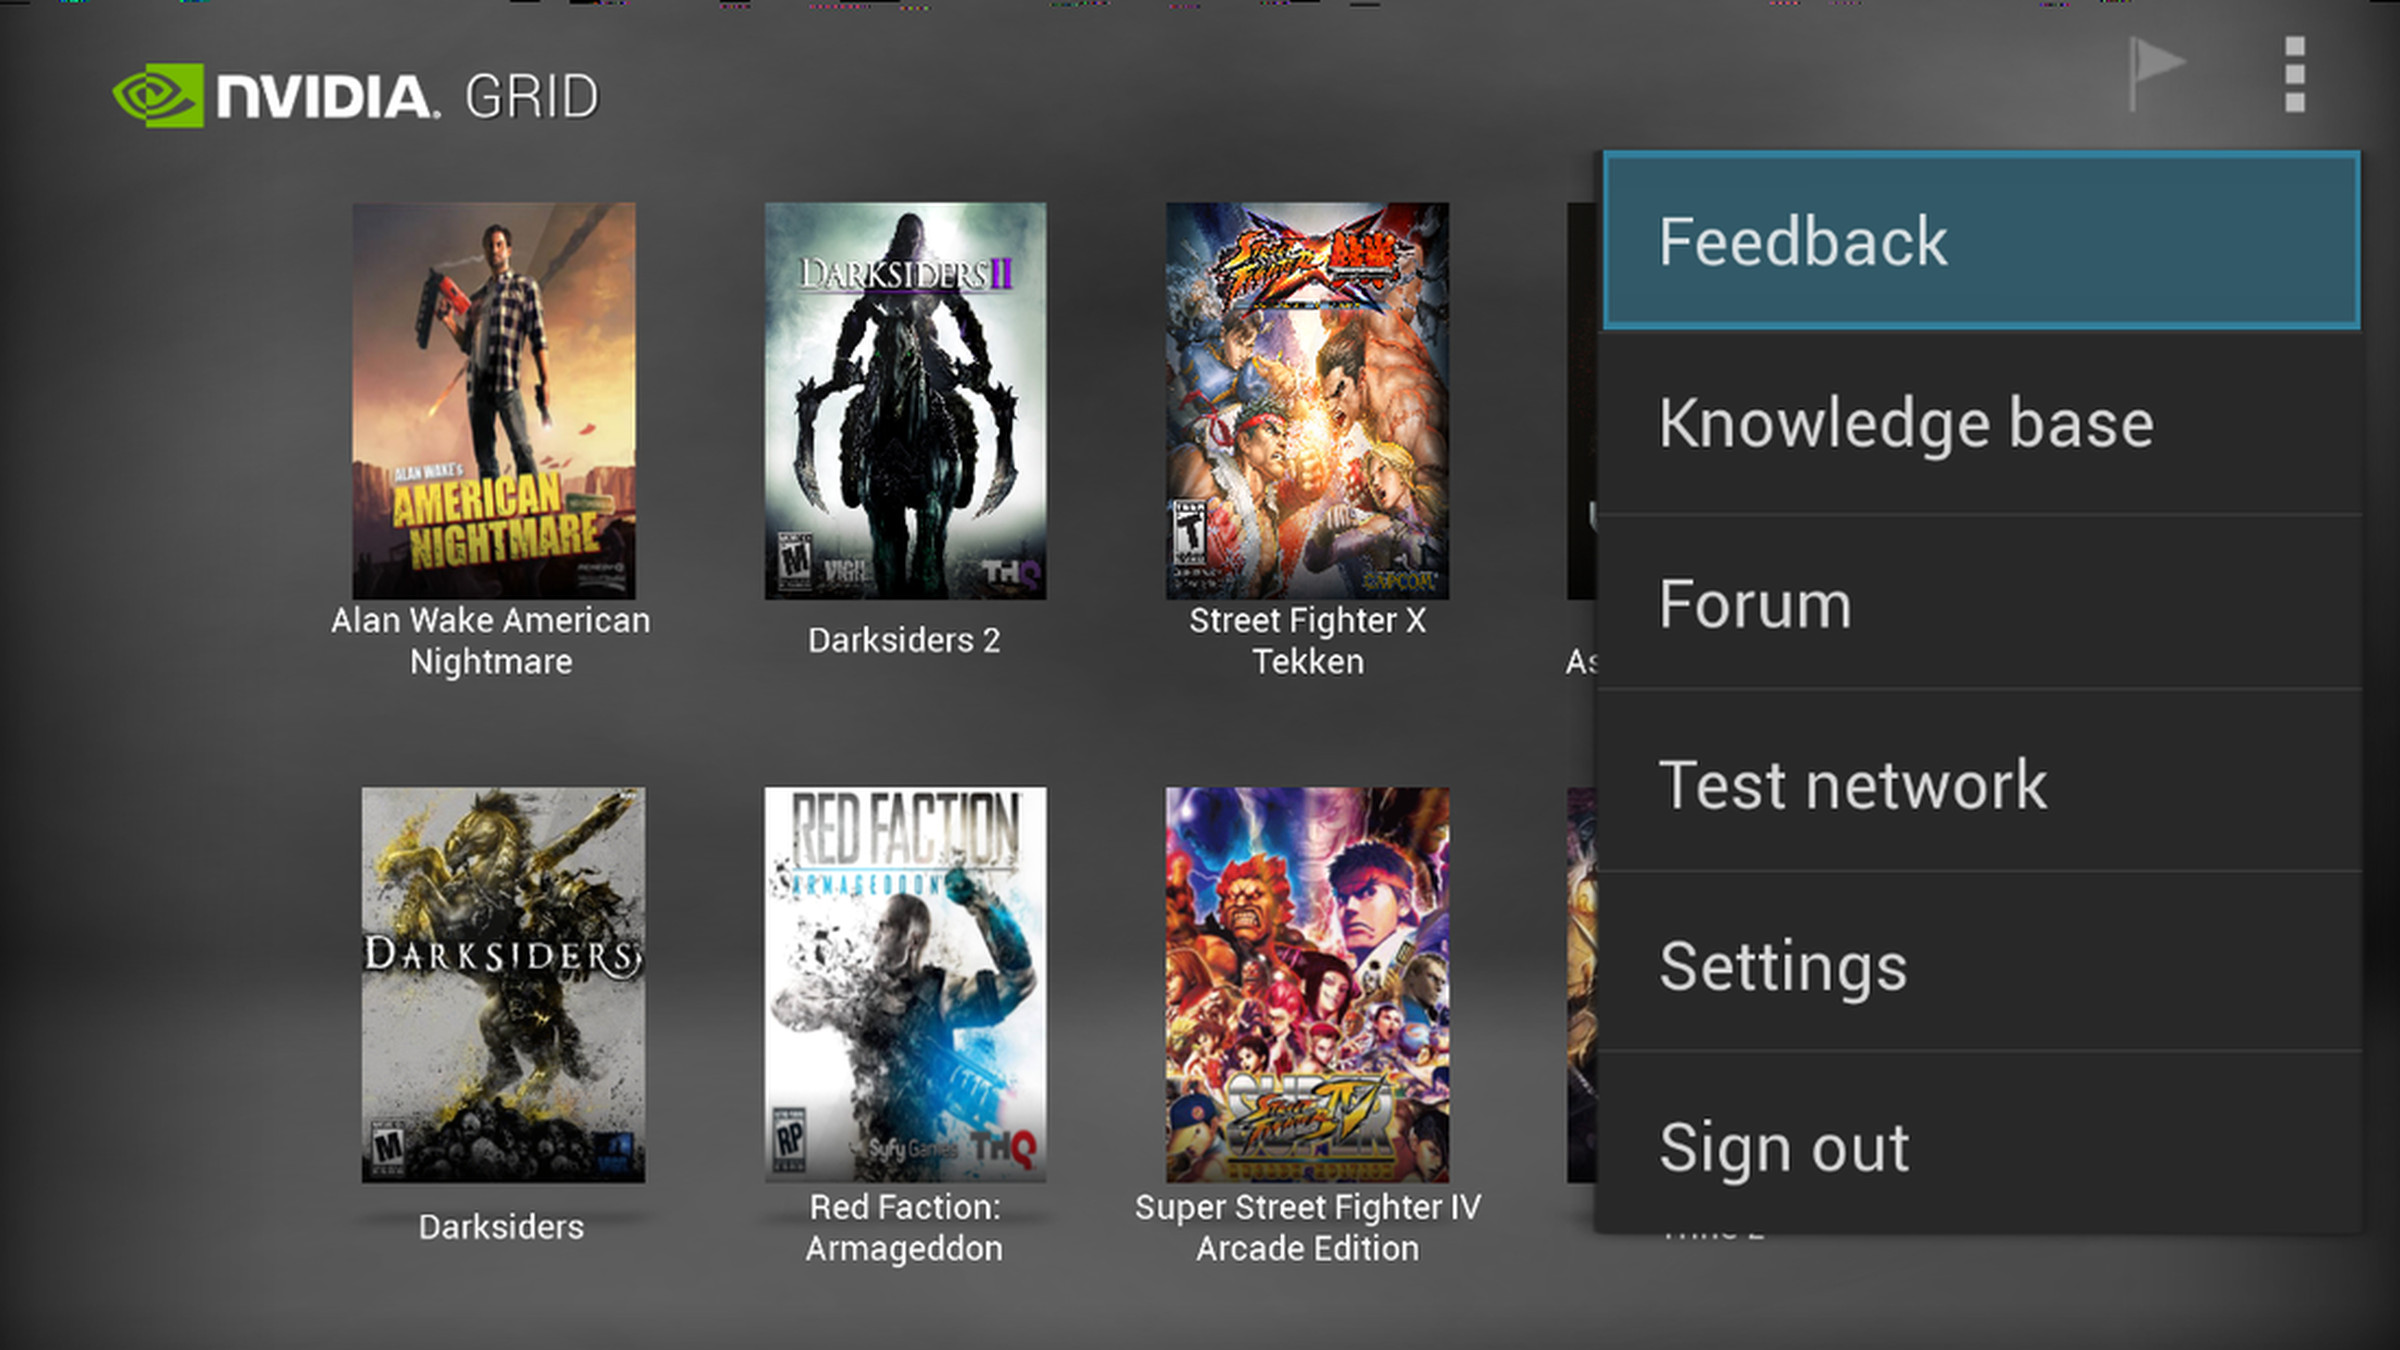 Nvidia Grid cloud gaming on Nvidia Shield screenshots